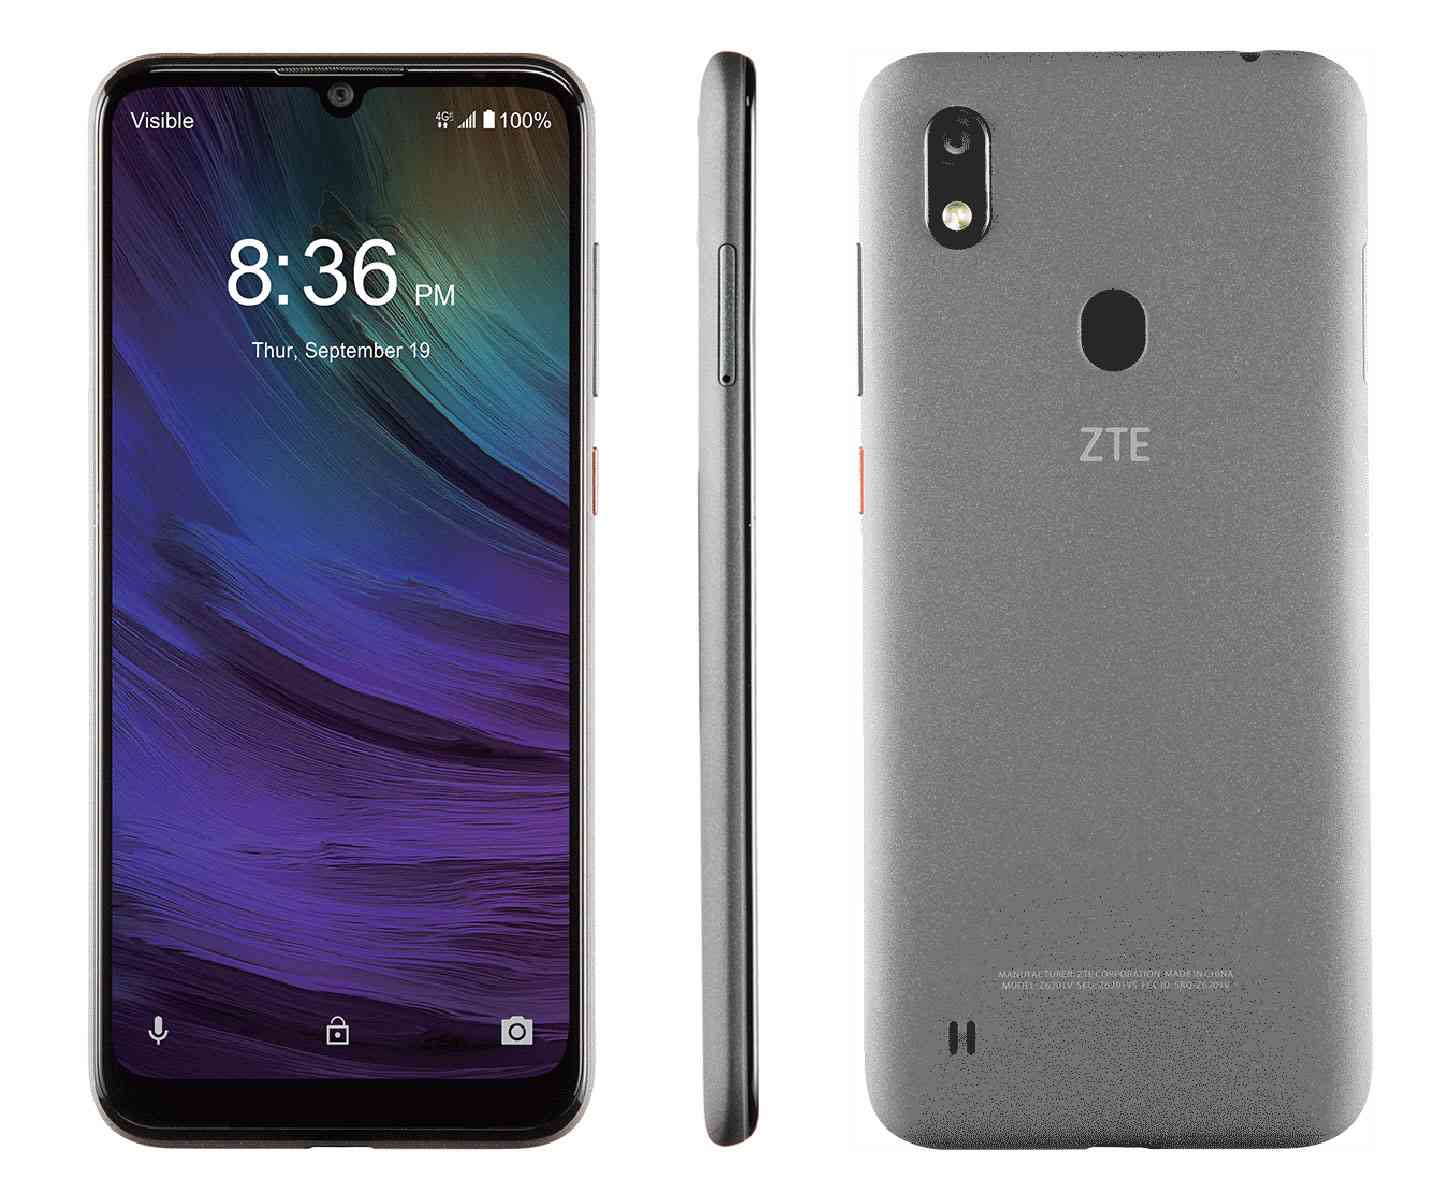 Test du smartphone ZTE Blade A7 Prime avec les principales caractéristiques